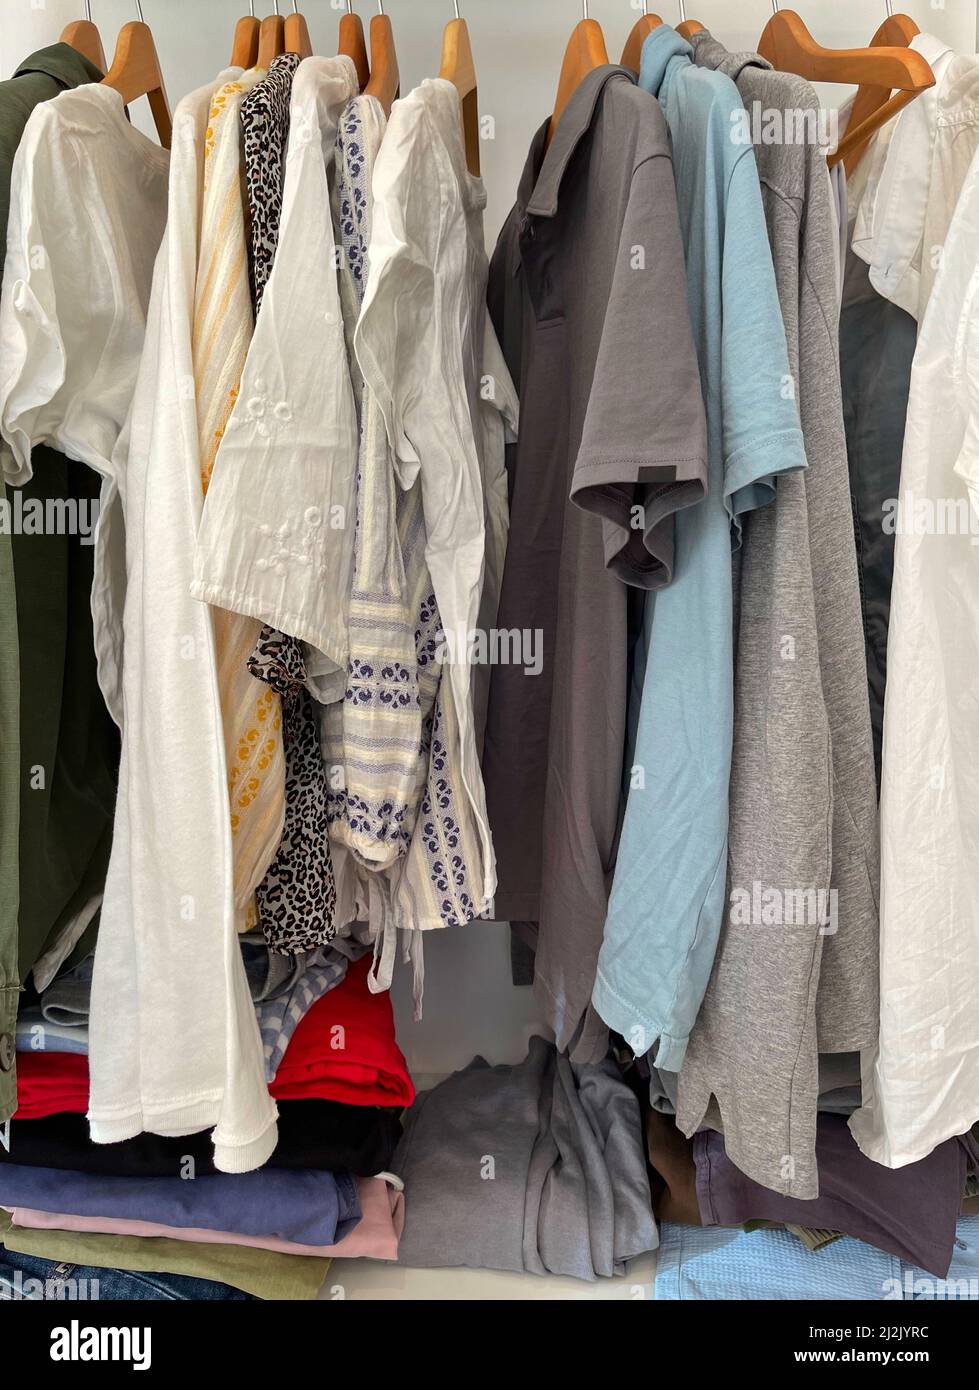 Vêtements assortis pour hommes et femmes dans une garde-robe Banque D'Images